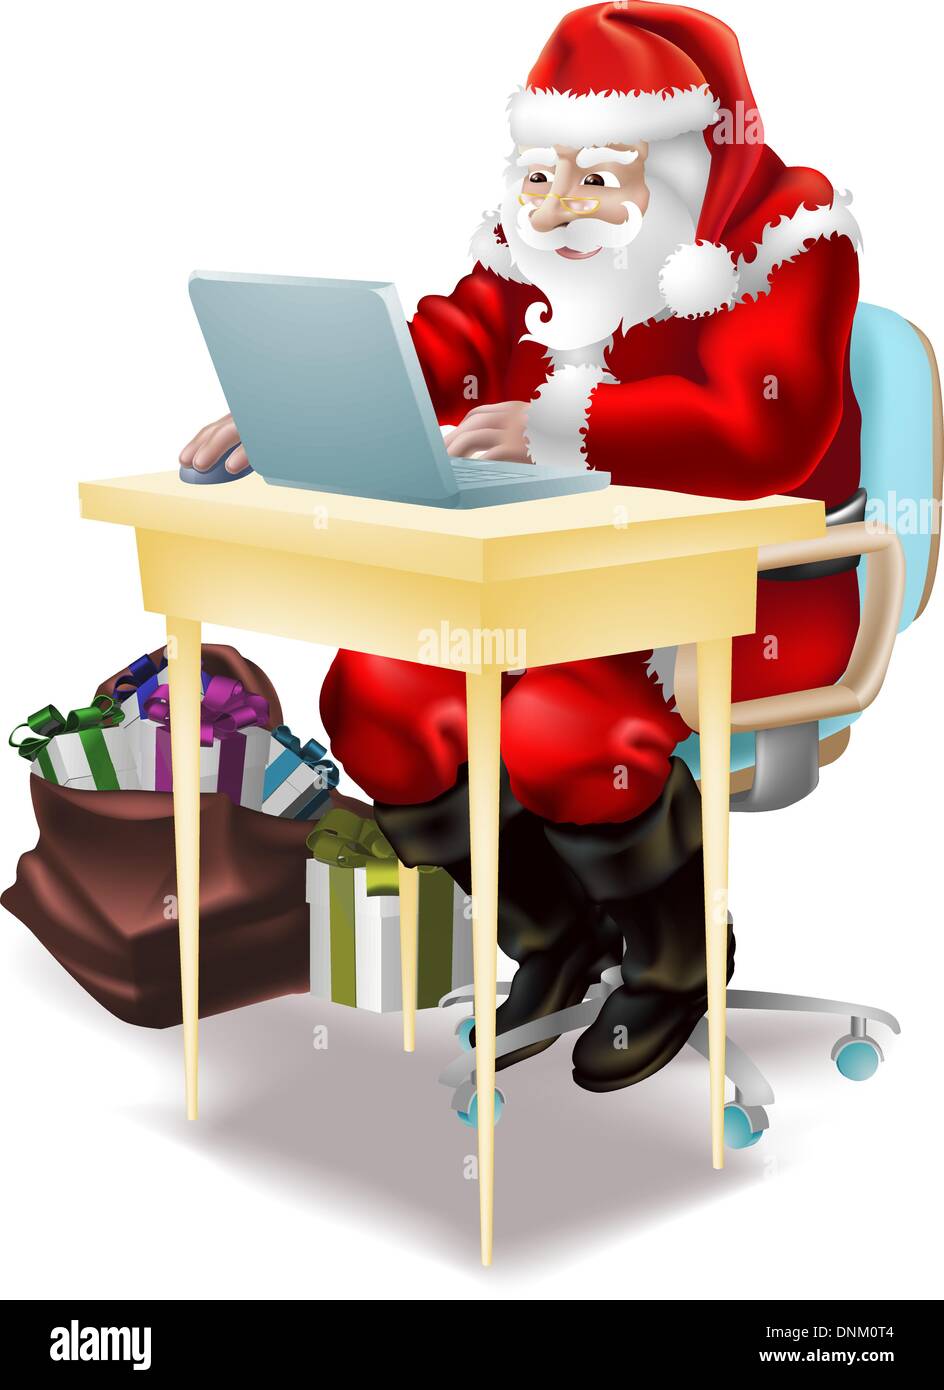 Illustration du père noël achats on-line ou de l'écriture de sa 'liste' coquin et agréable la veille de Noël Illustration de Vecteur